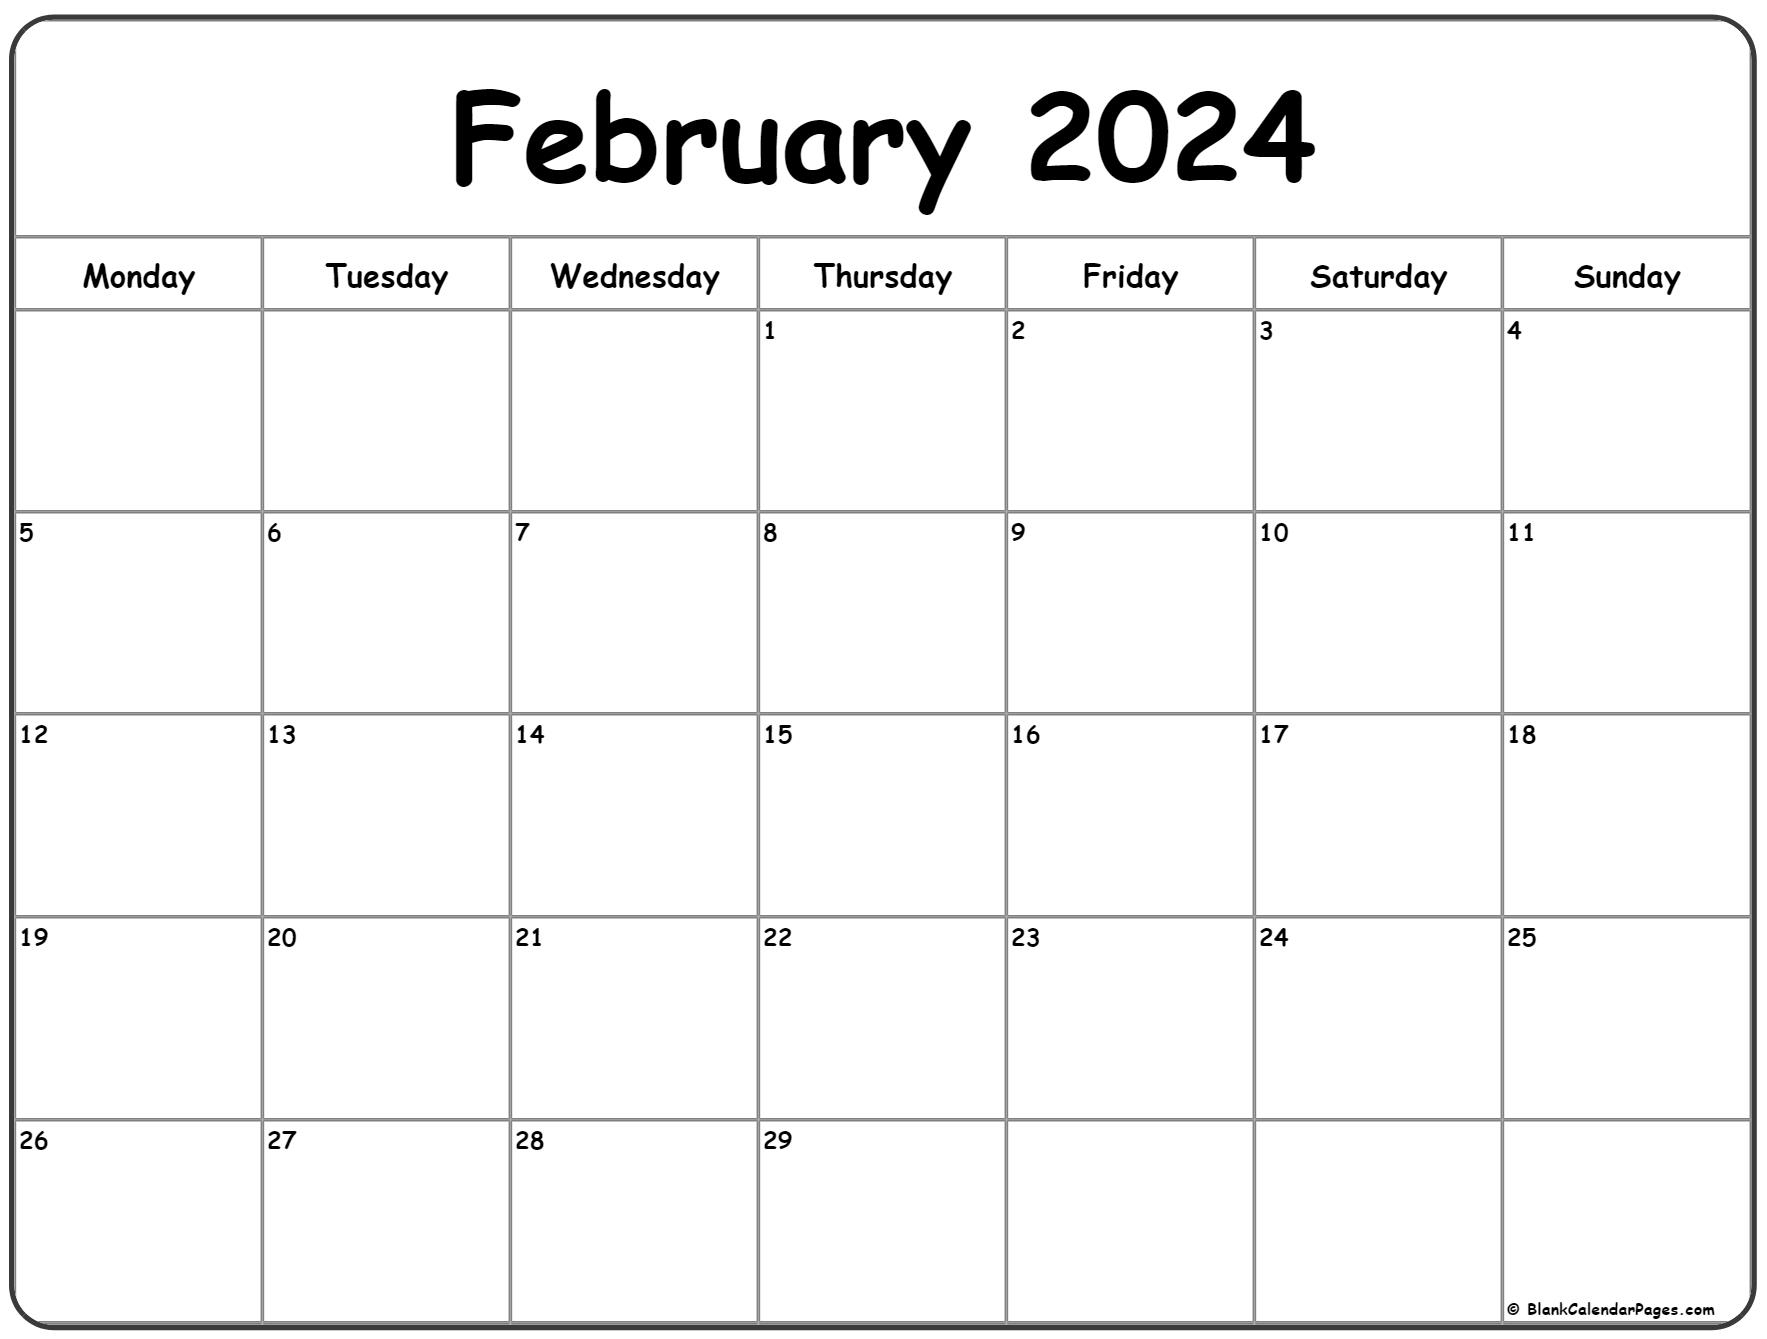 February 2024 Monday Calendar | Monday To Sunday for A Printable Calendar February 2024